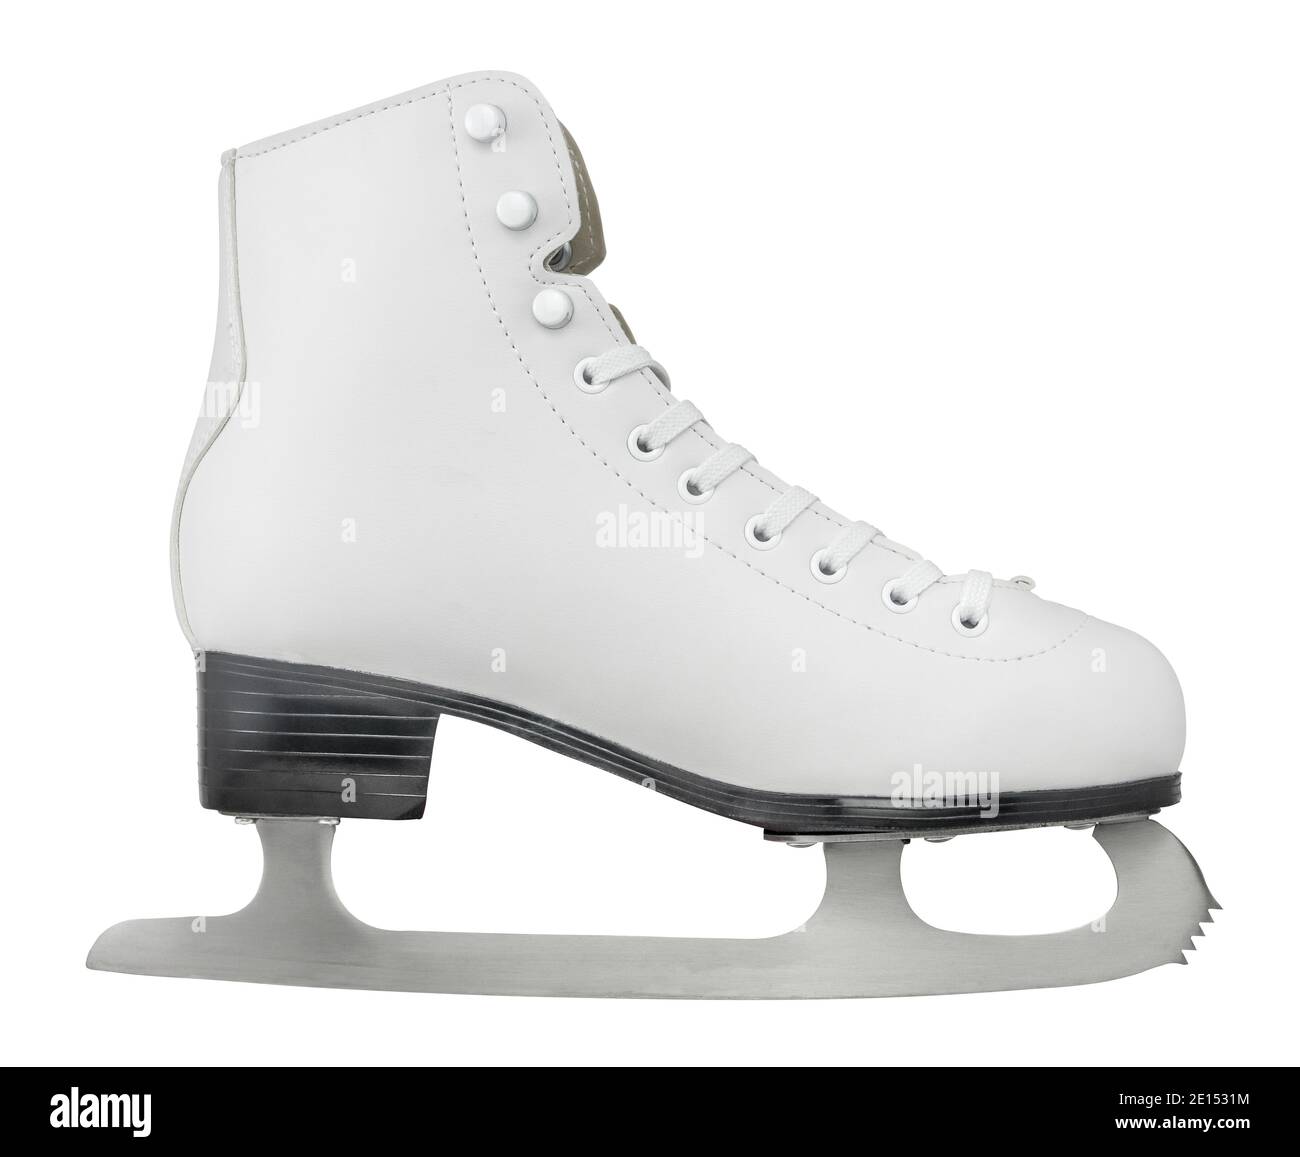 Chaussure de patinage sur glace en cuir blanc Isoated sur fond blanc Banque D'Images